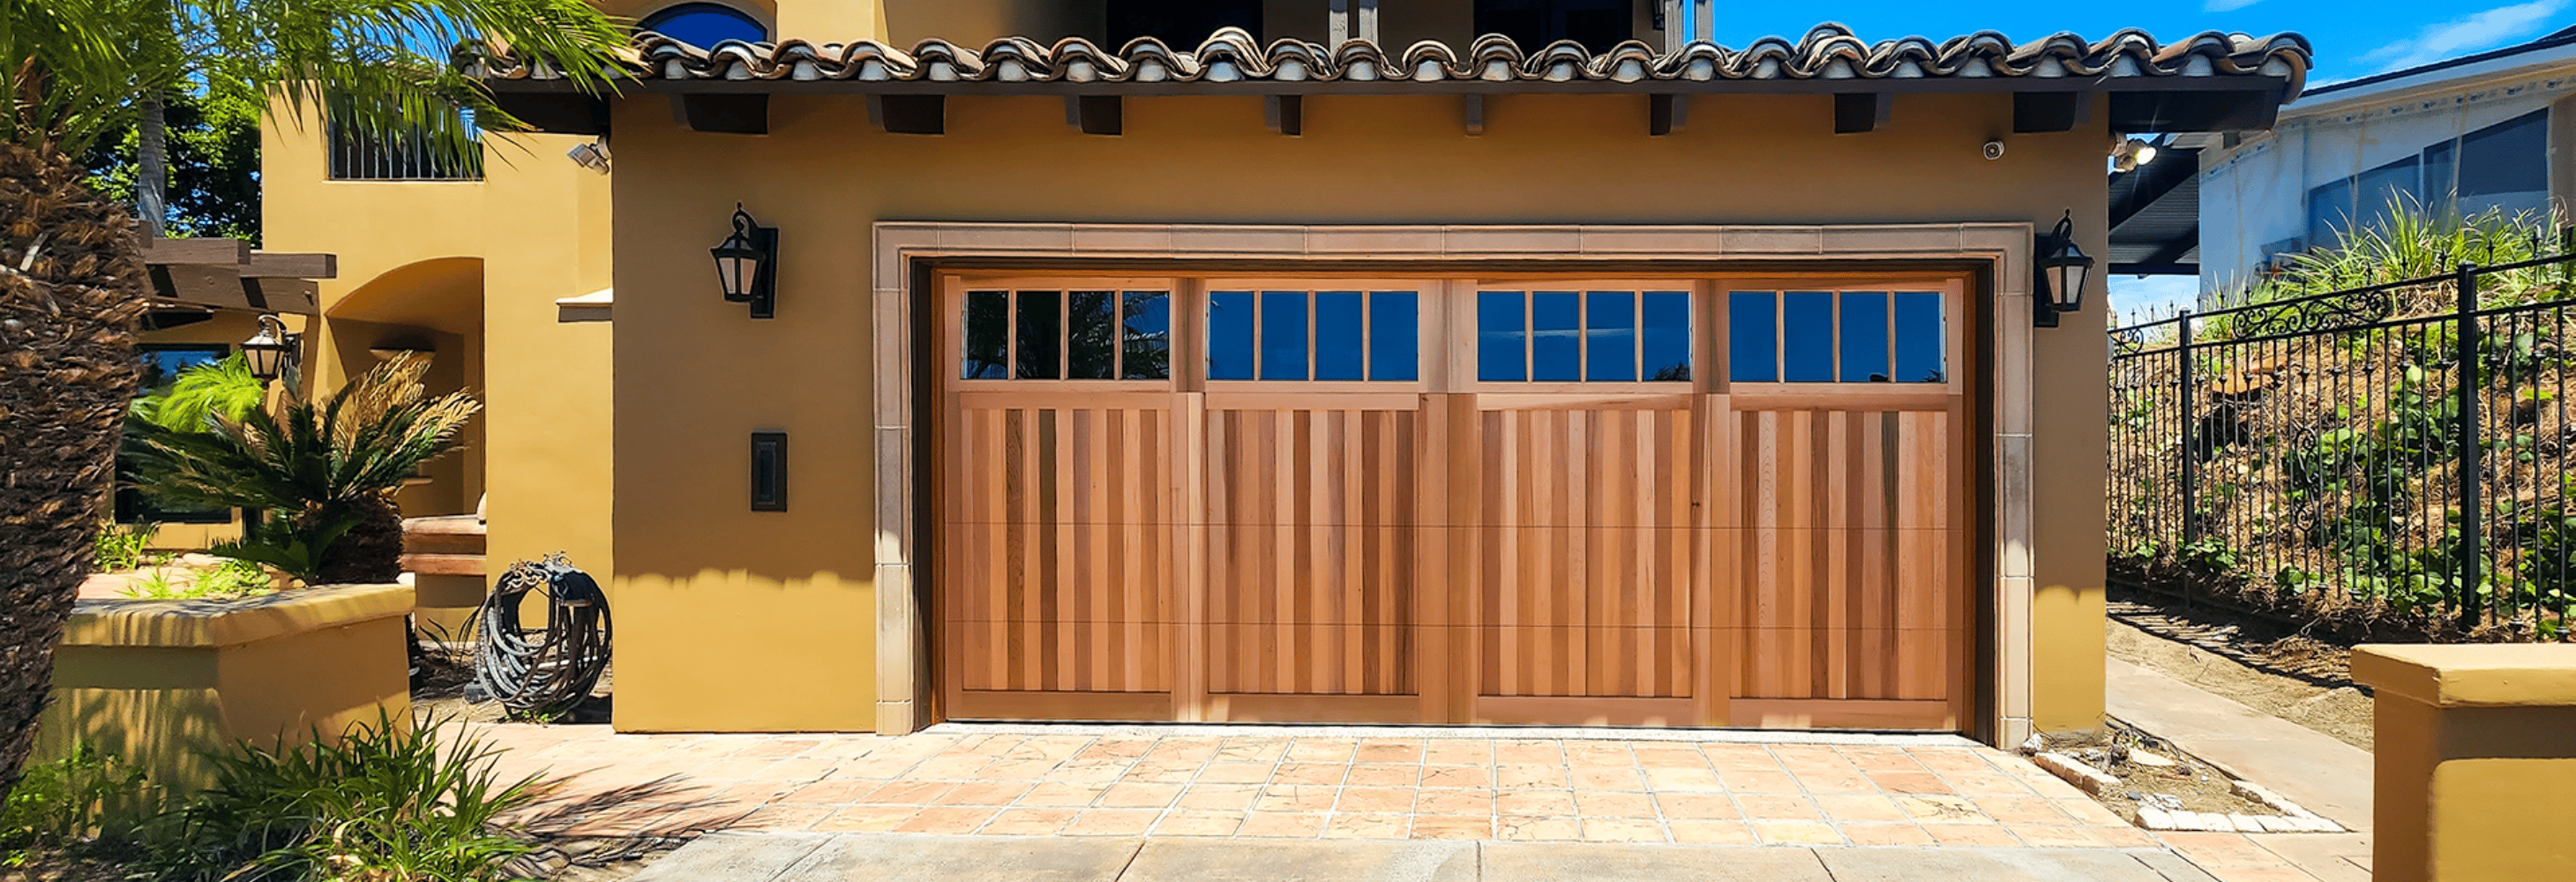 wood overlay garage door with top row windows